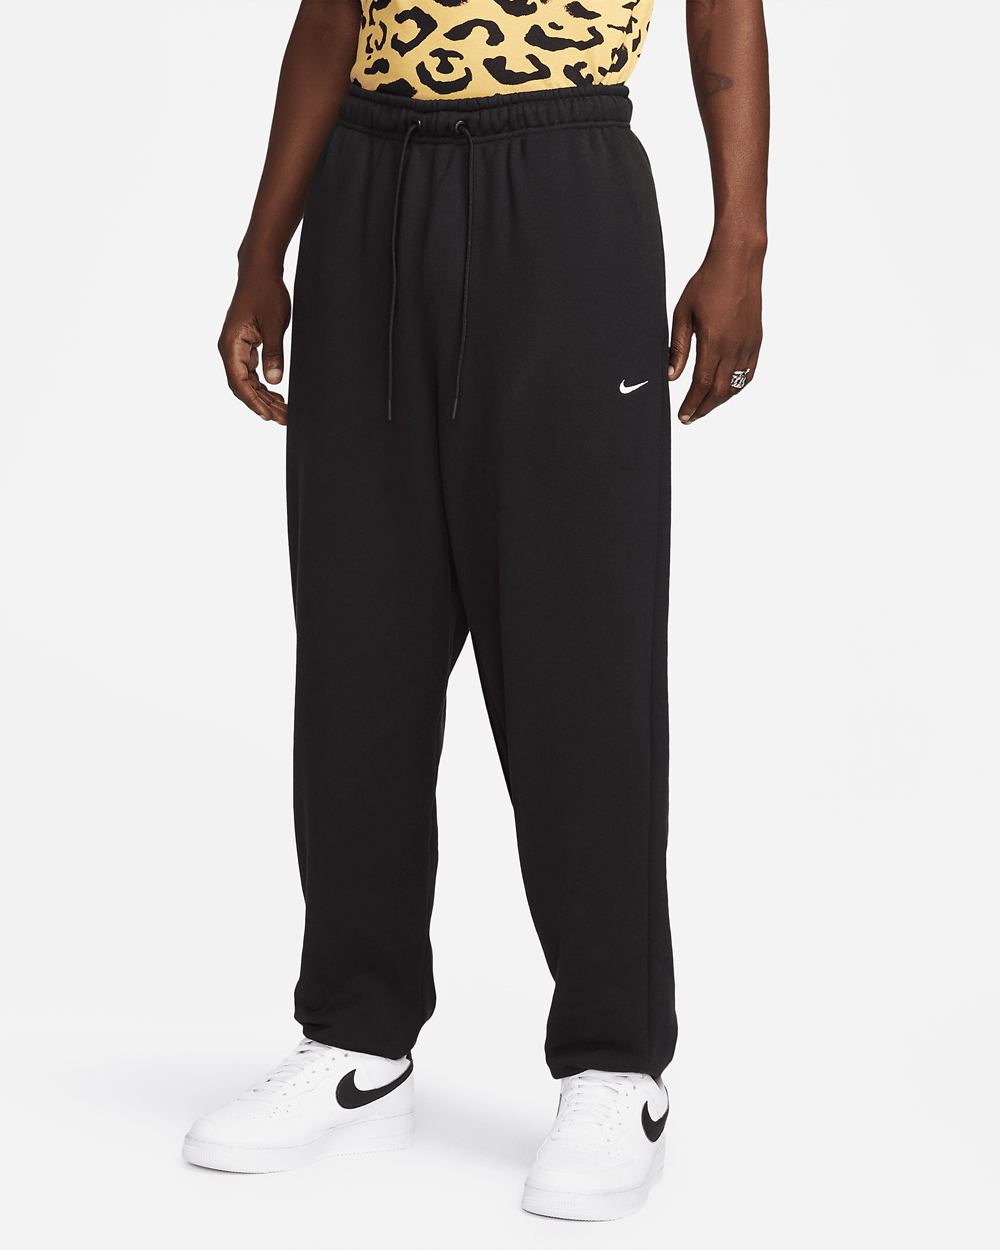 Nike-Sportswear-Circa-French-Terry-Pants-Black-White